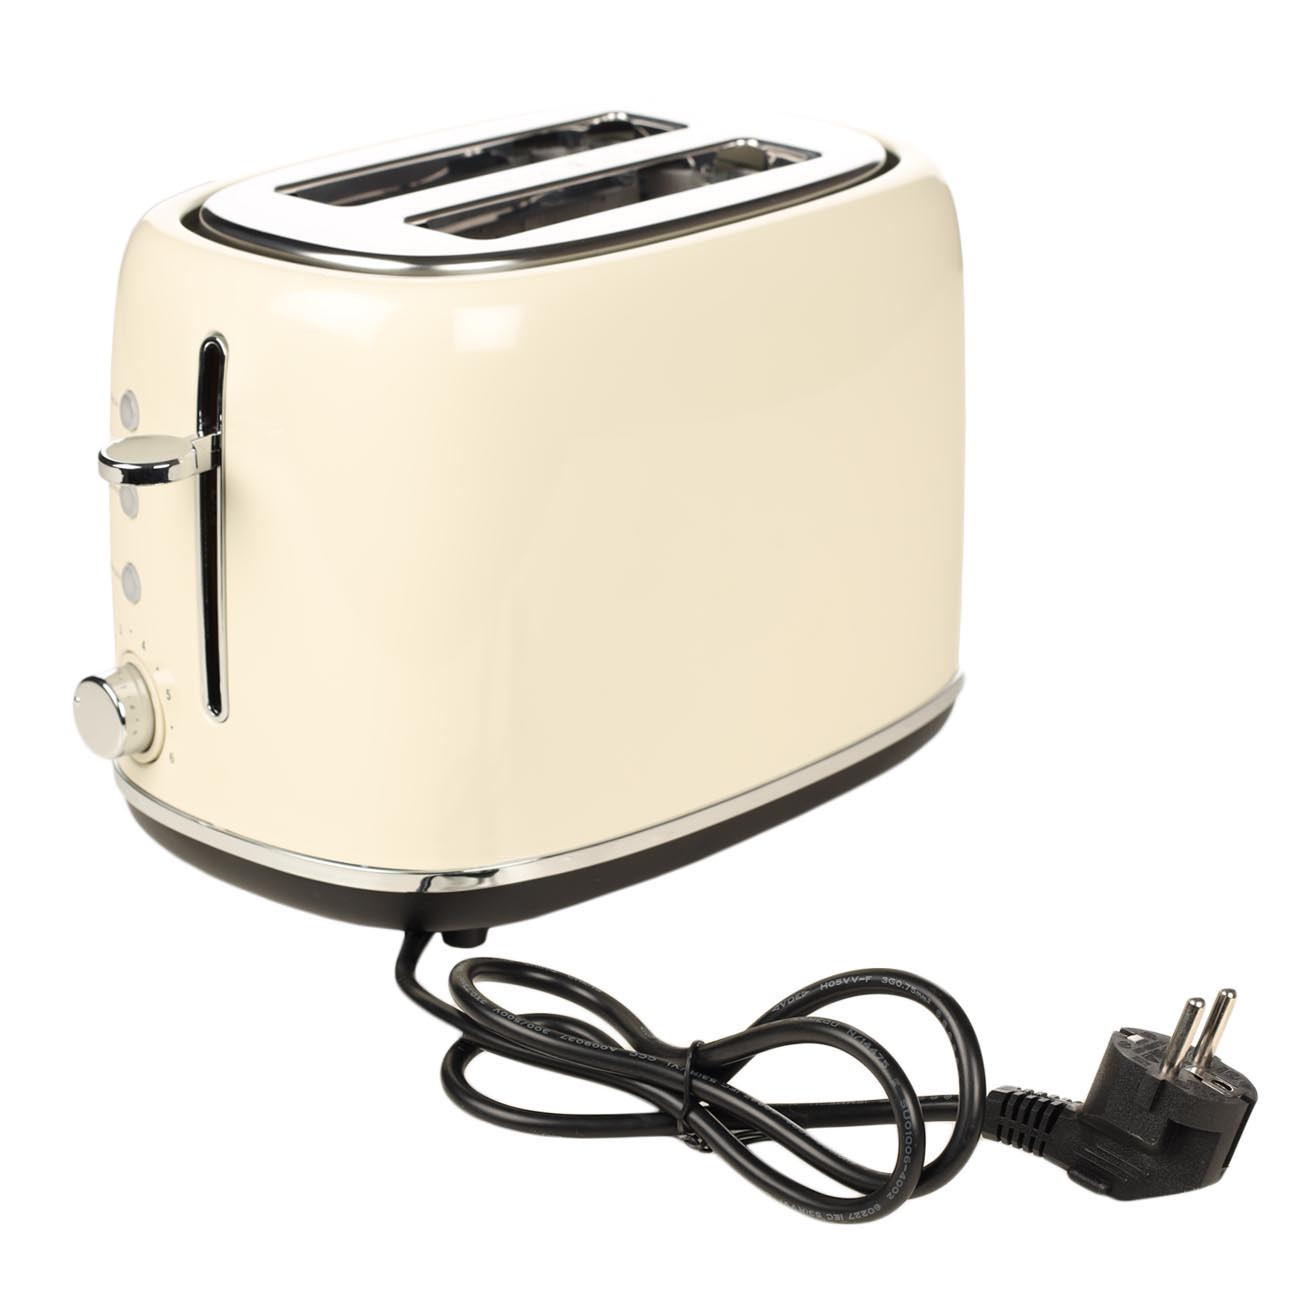 Тостер электрический, 730-870 Вт, 6 режимов, сталь/пластик, бежевый, Vintage kitchen